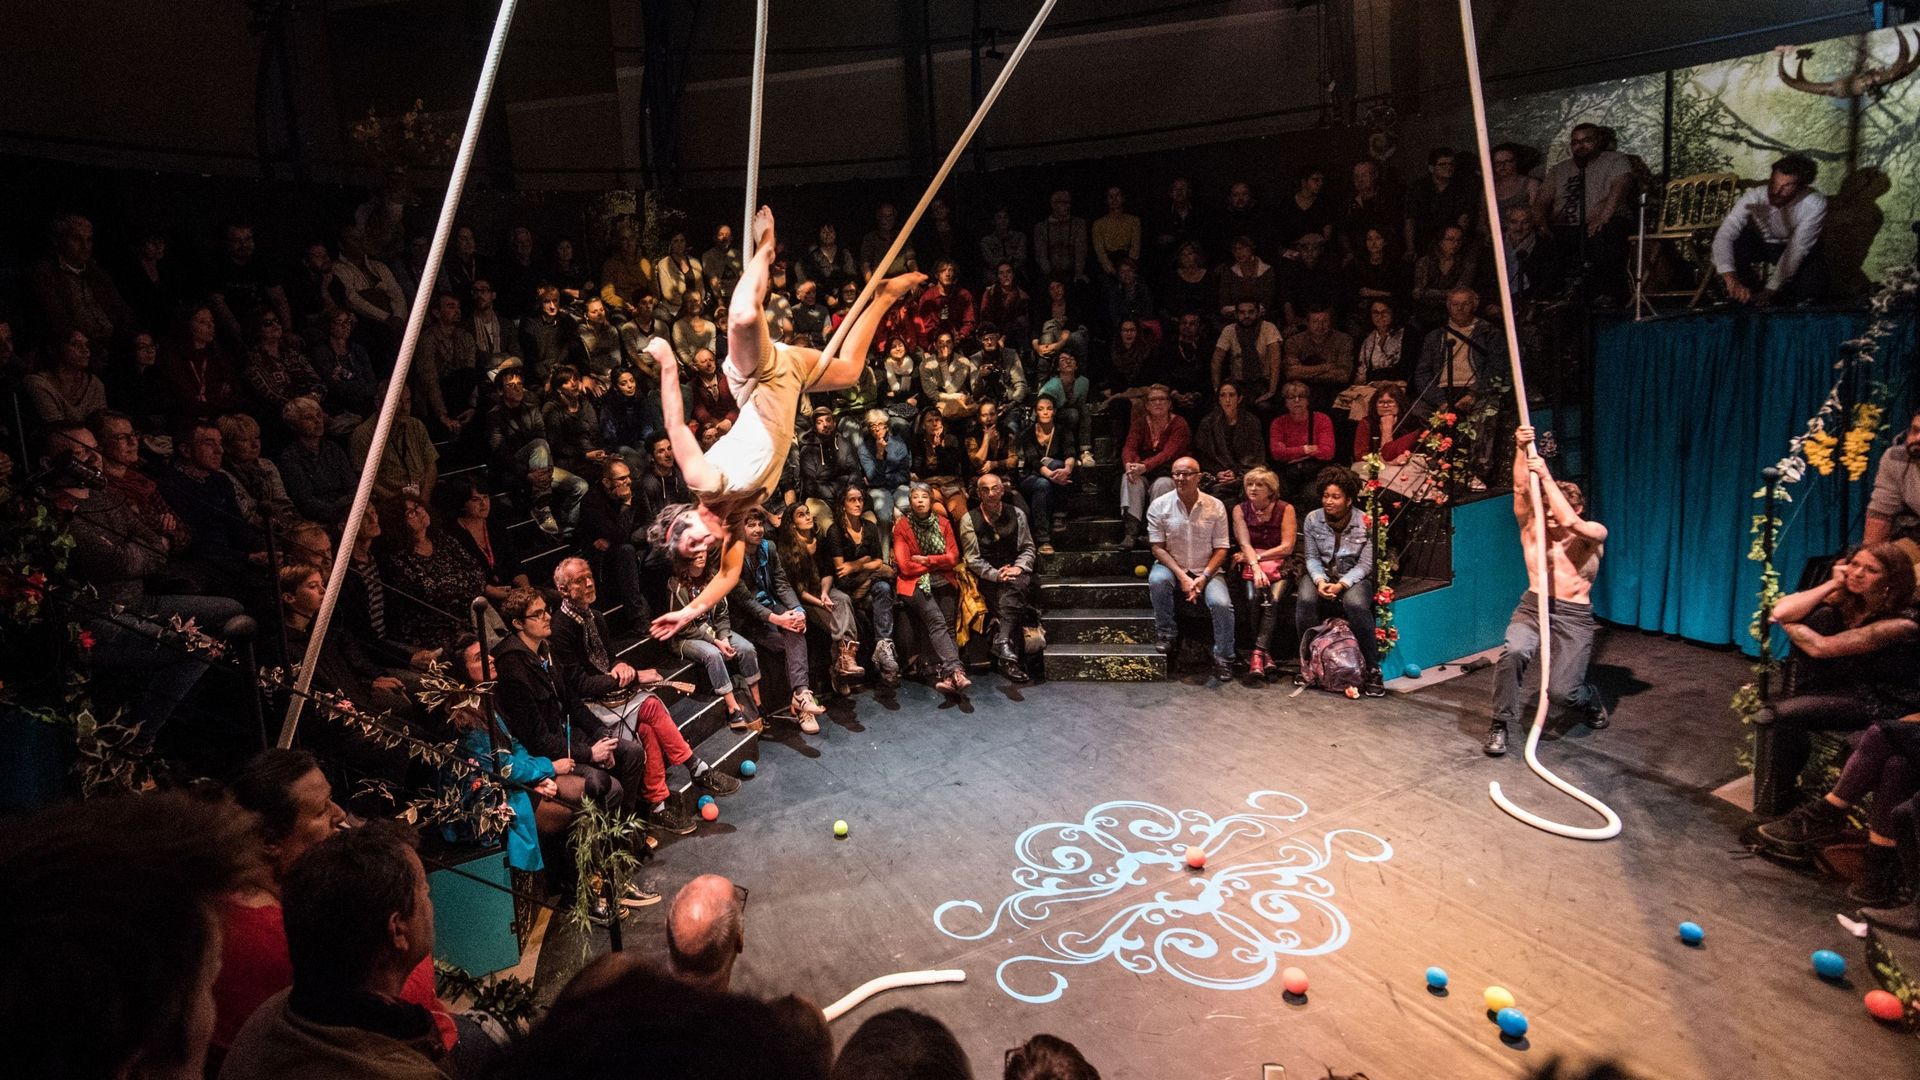 50 représentations prévues au 63ème Royal Festival de Spa avec une variété dans les arts de la scène dont le cirque (ici, le spectacle d'ouverture "Les Princesses").